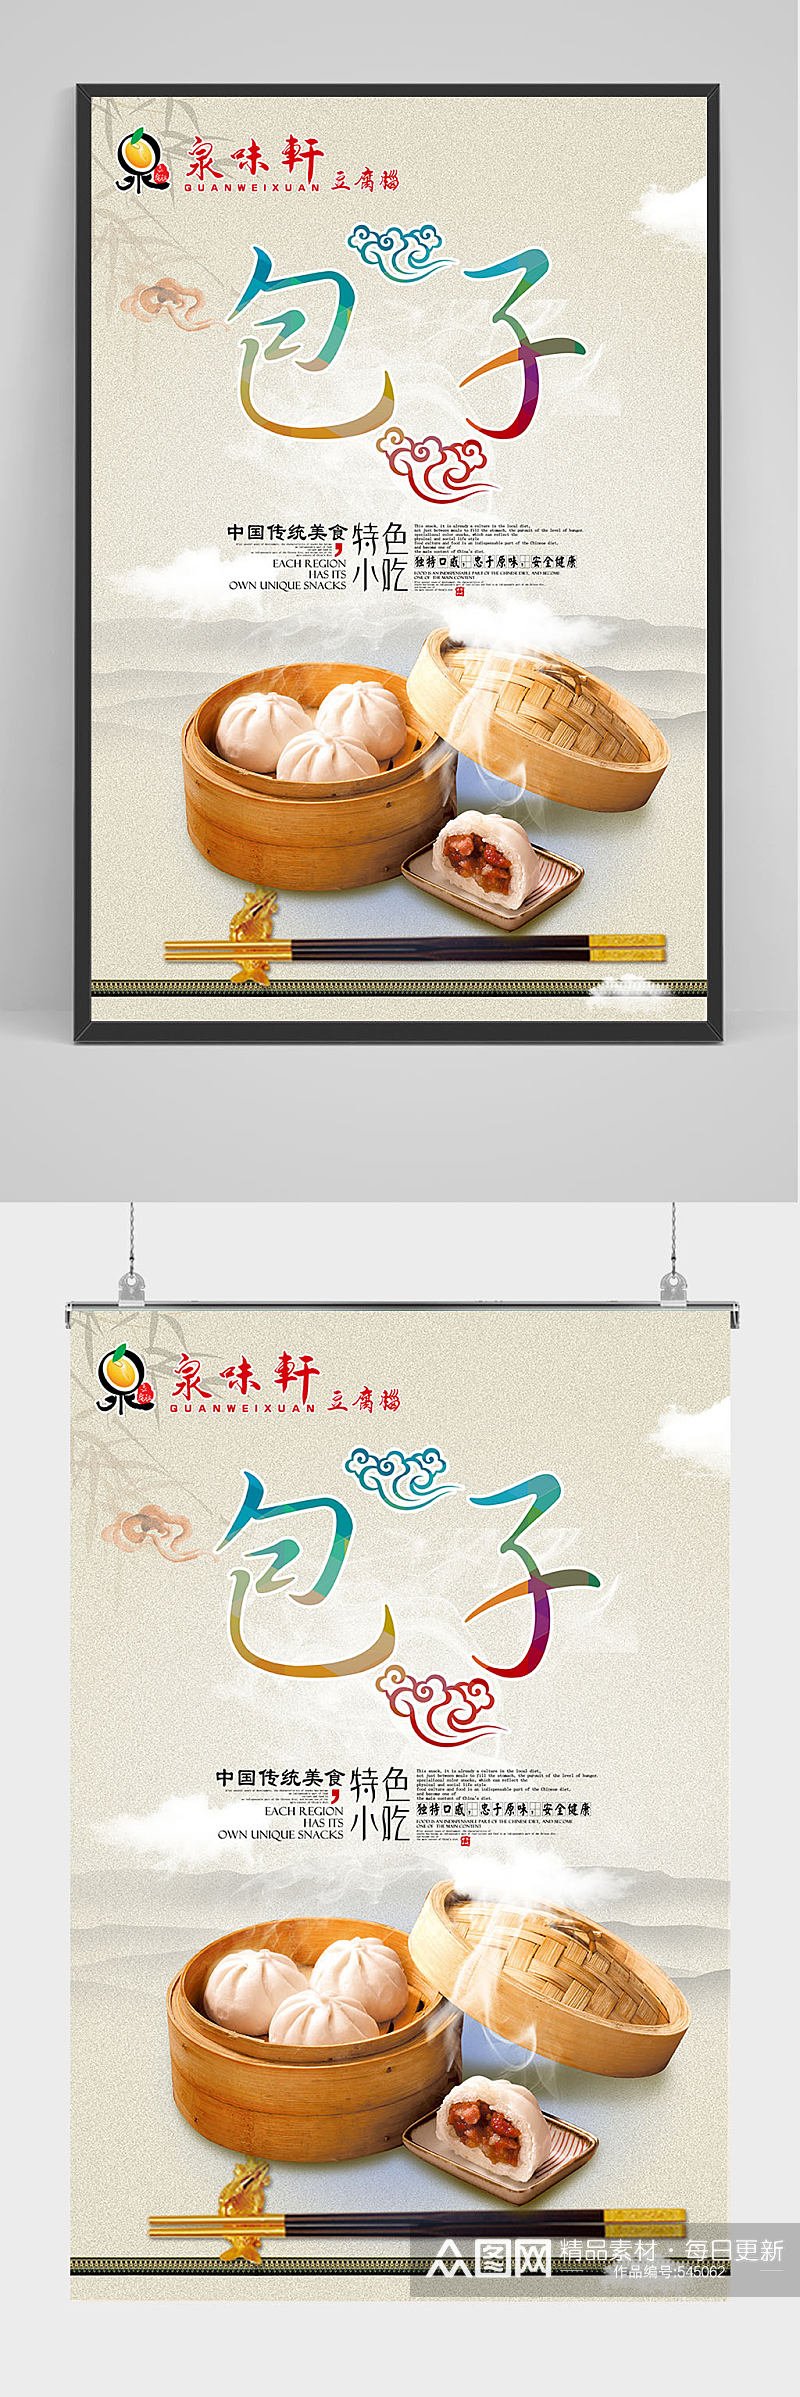 中国传统美食包子海报设计素材